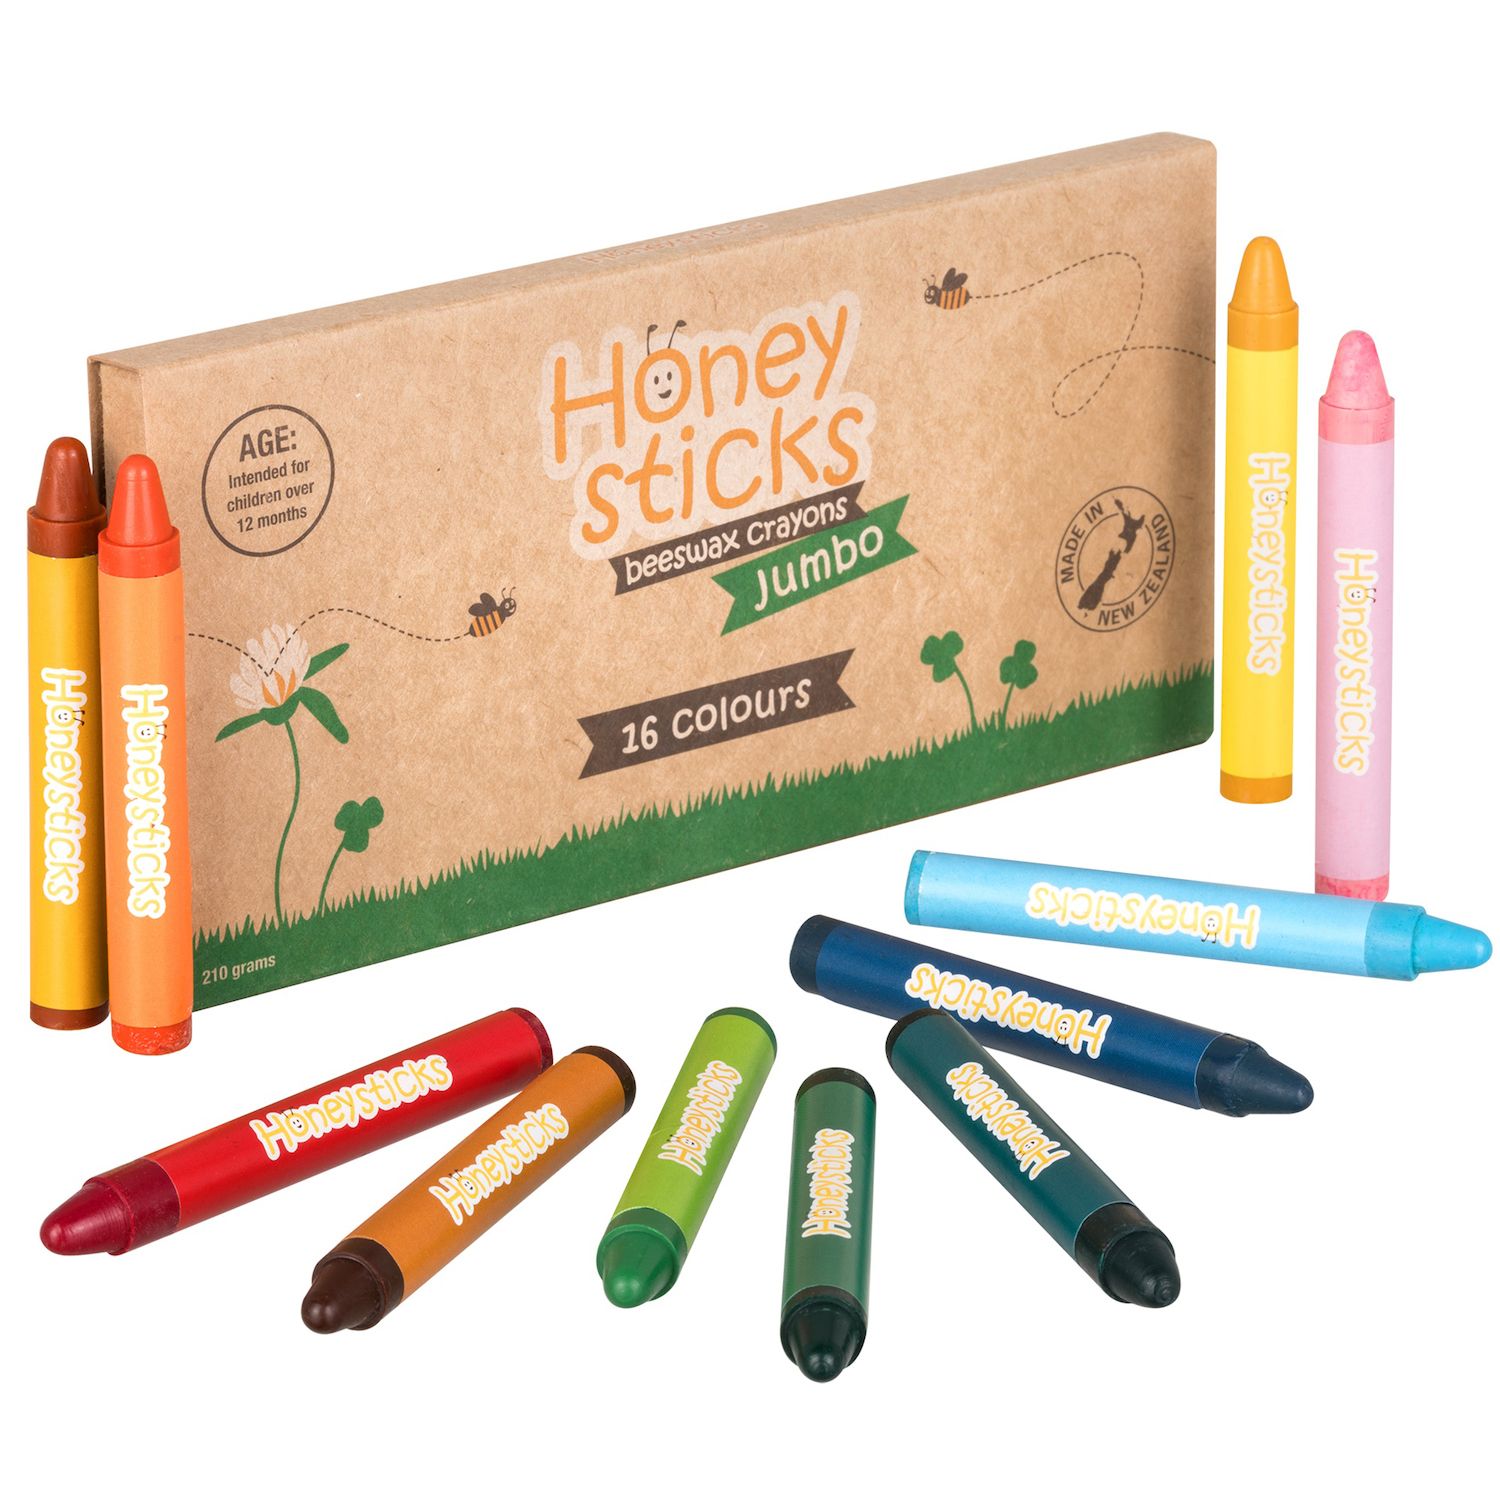 Honeysticks Beeswax Washable Bath Tub Crayons